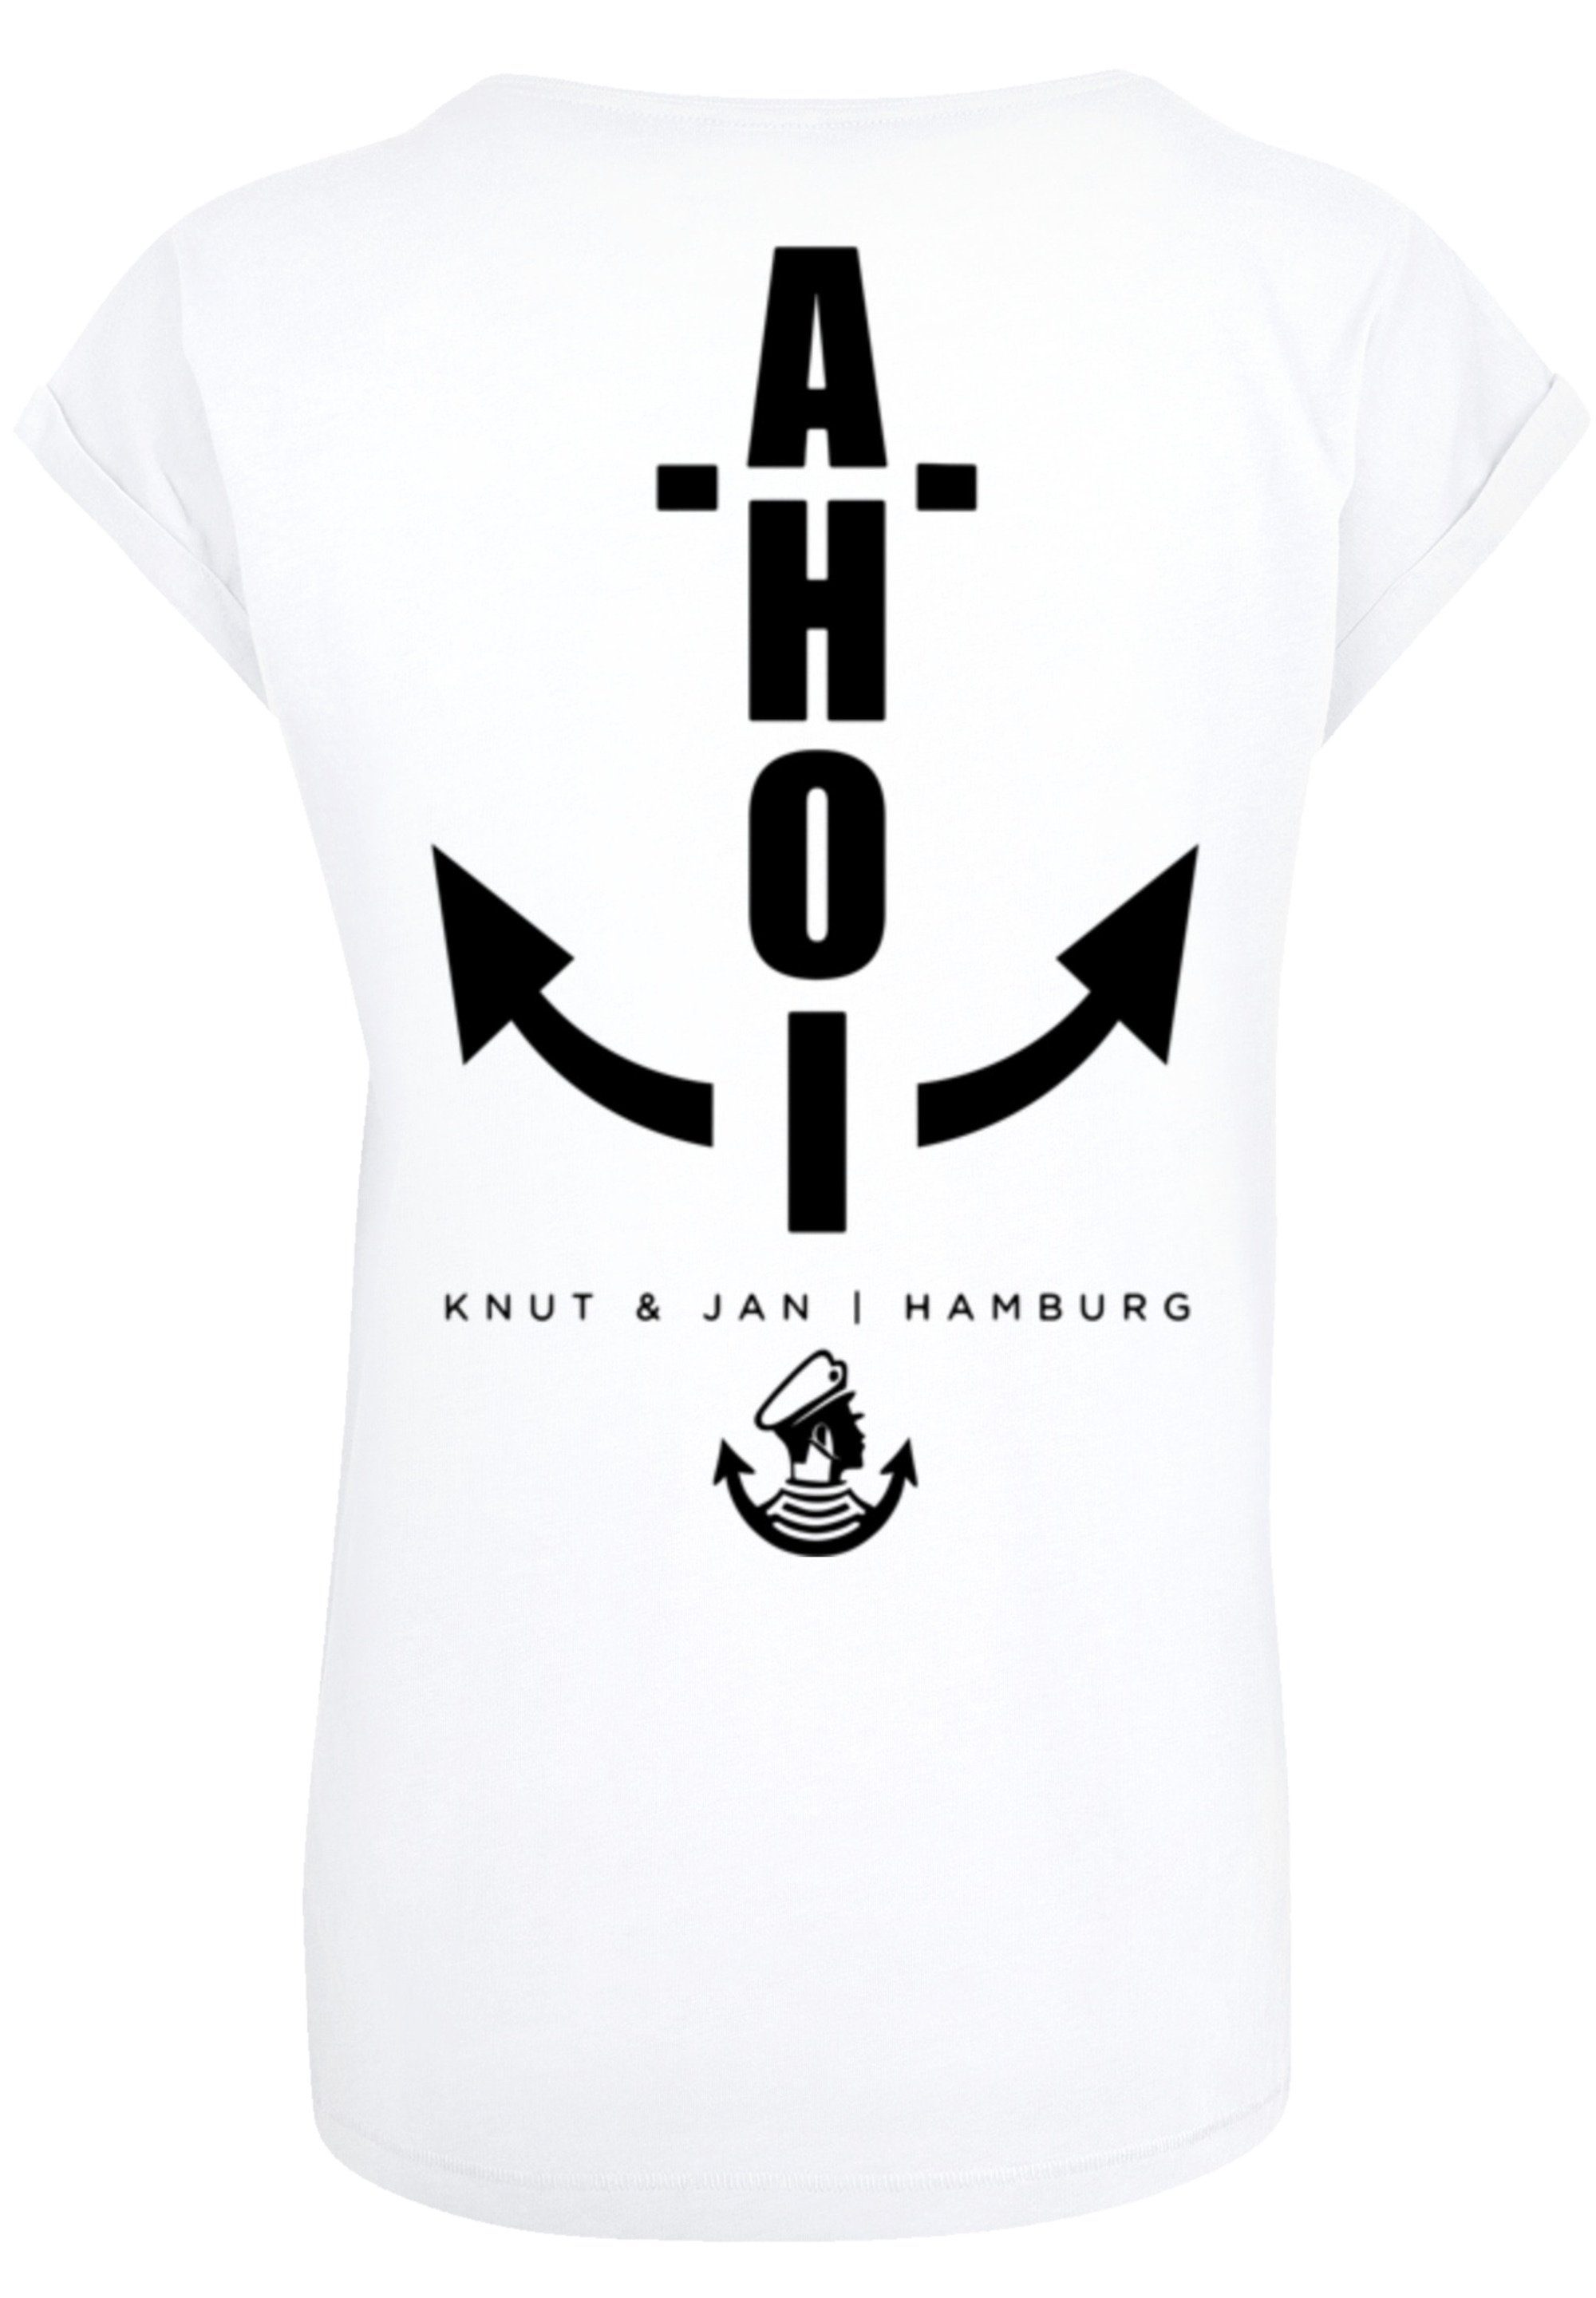 F4NT4STIC T-Shirt PLUS & Hamburg Jan Print Ahoi Anker SIZE Knut